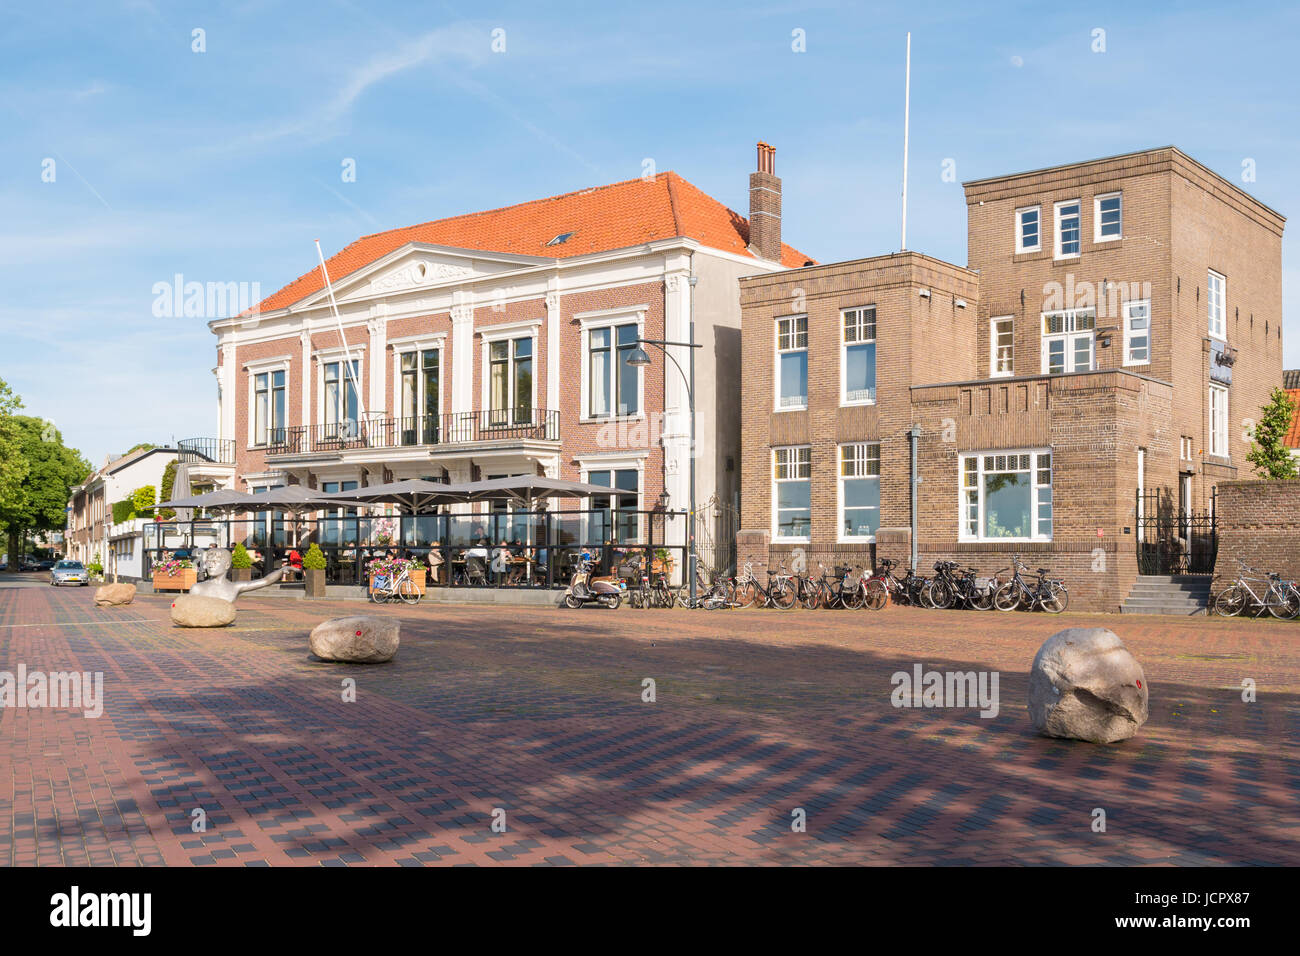 Edificios históricos en Waalkade en el casco antiguo de la ciudad fortificada Zaltbommel, Gelderland, Países Bajos Foto de stock